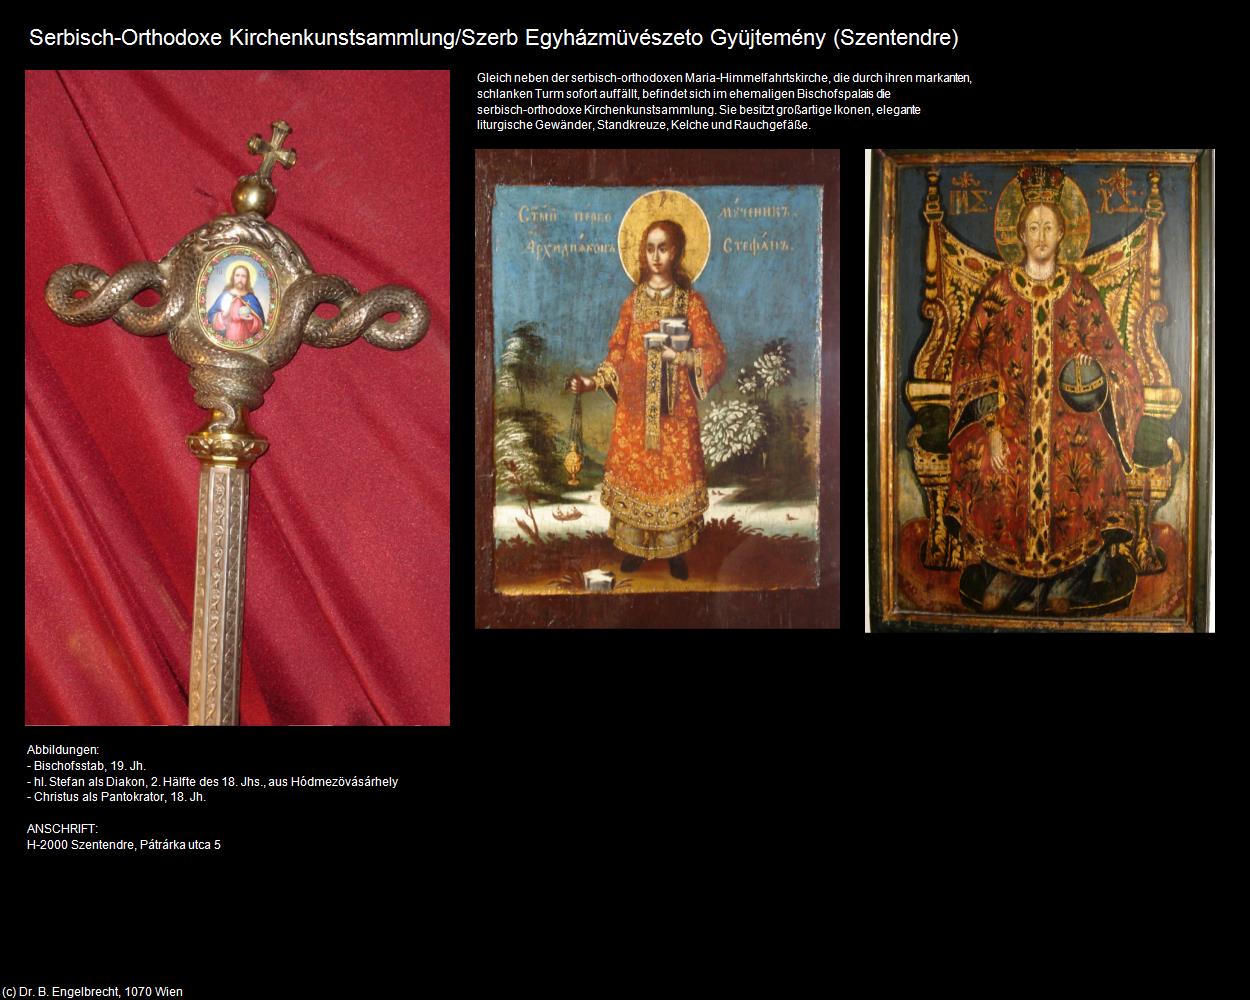 Serbisch-orthodoxe Kirchenkunstsammlung (Szentendre) in UNGARN 